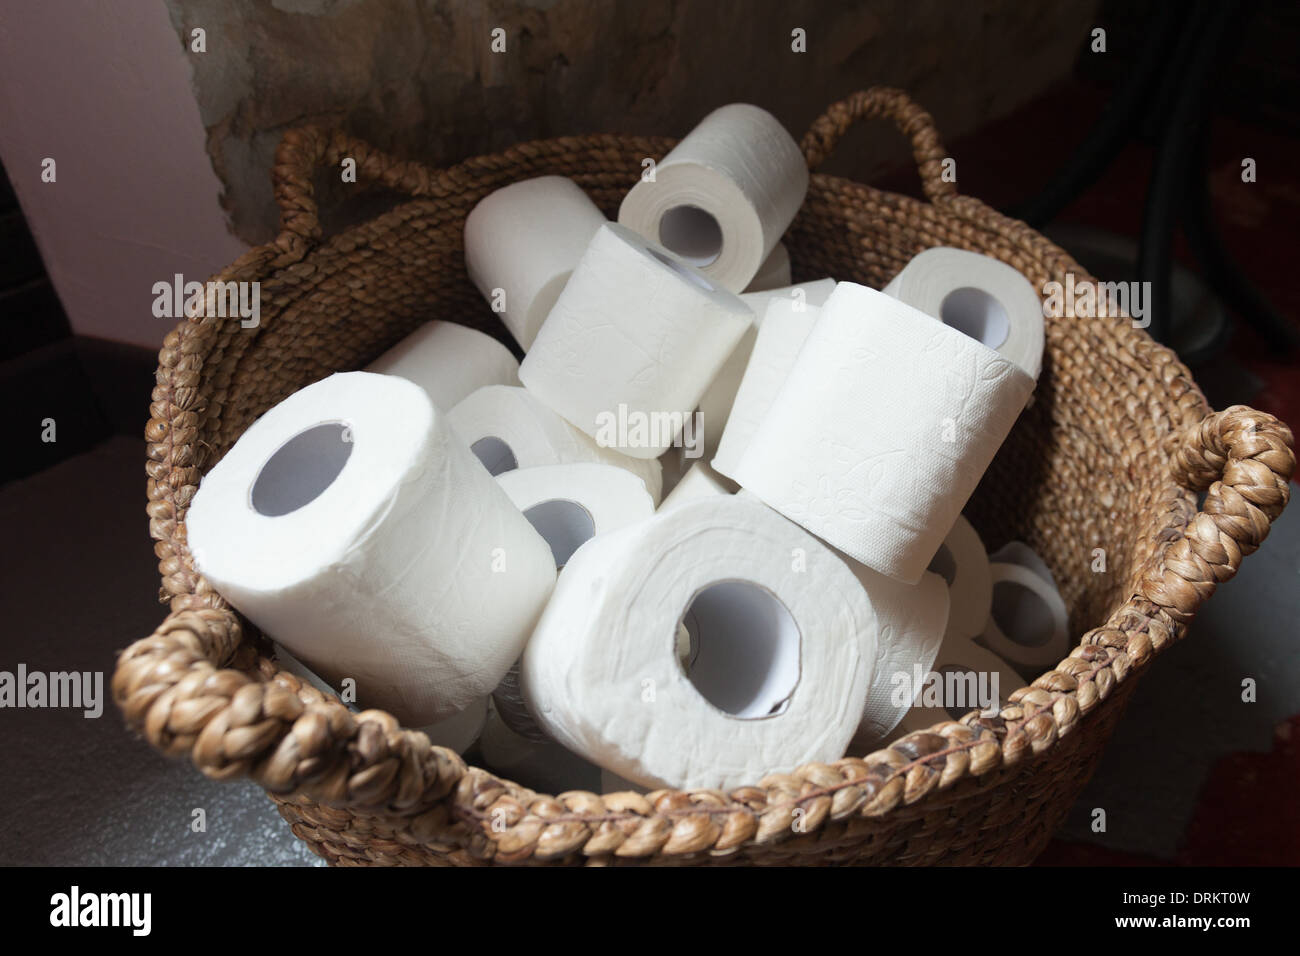 Des rouleaux de papier de toilette dans un panier. Banque D'Images